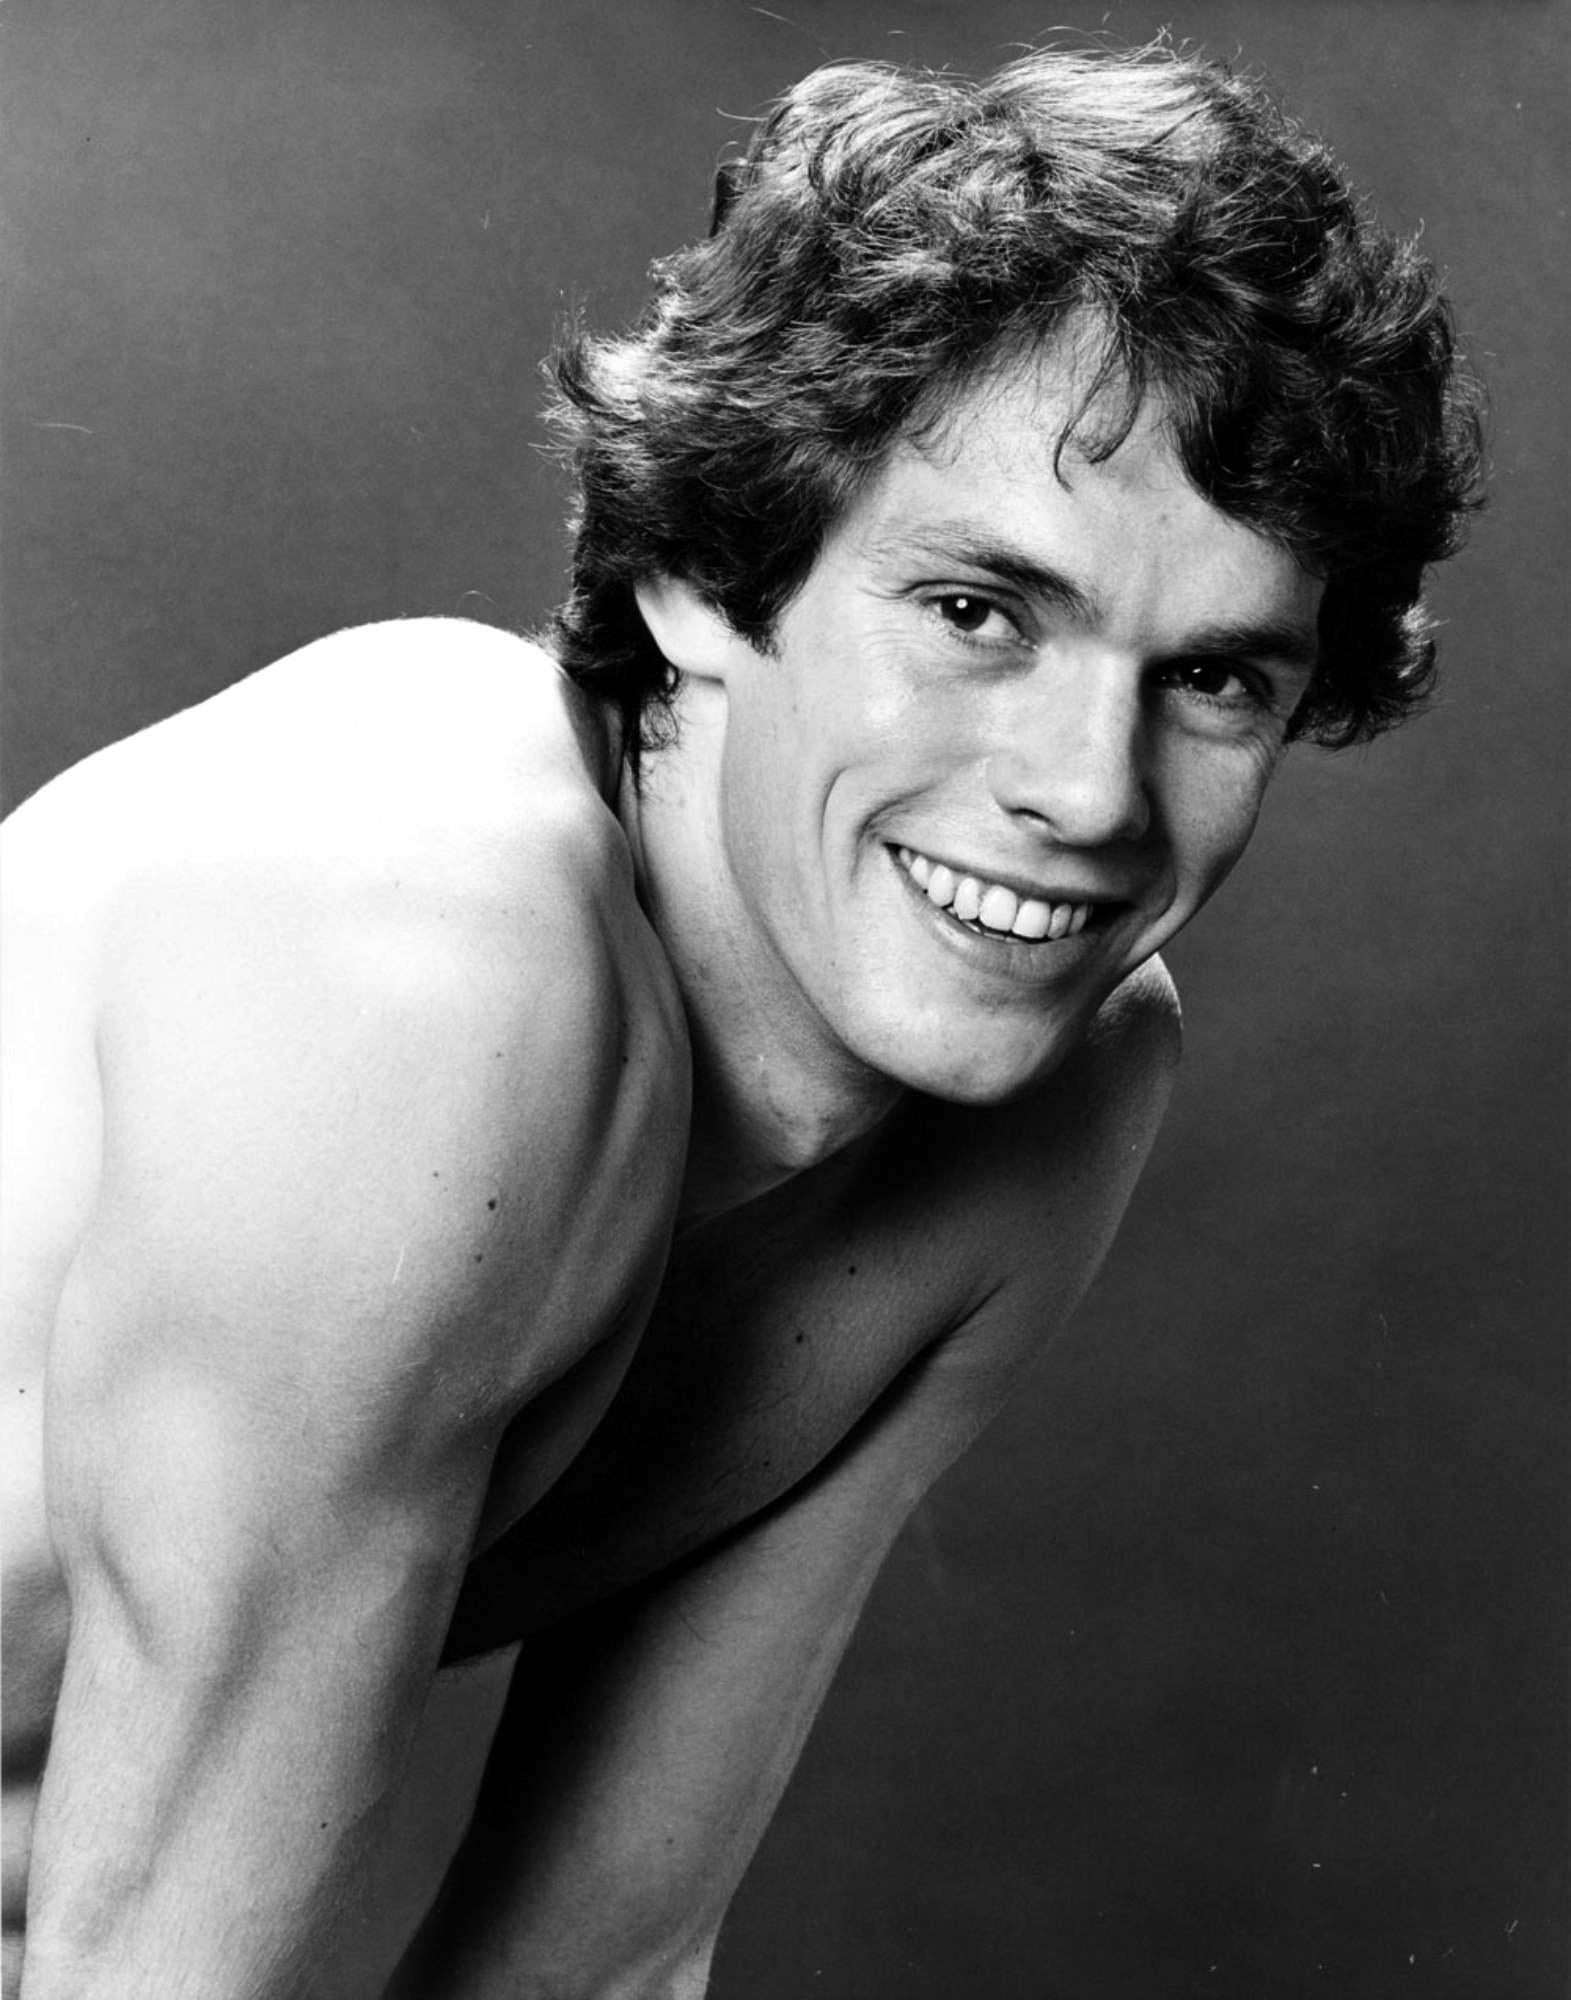 Jack Mitchell Nude Photograph – Olympische Gold Medal des britischen Eiskunstläufers John Curry, signiert von Mitchell